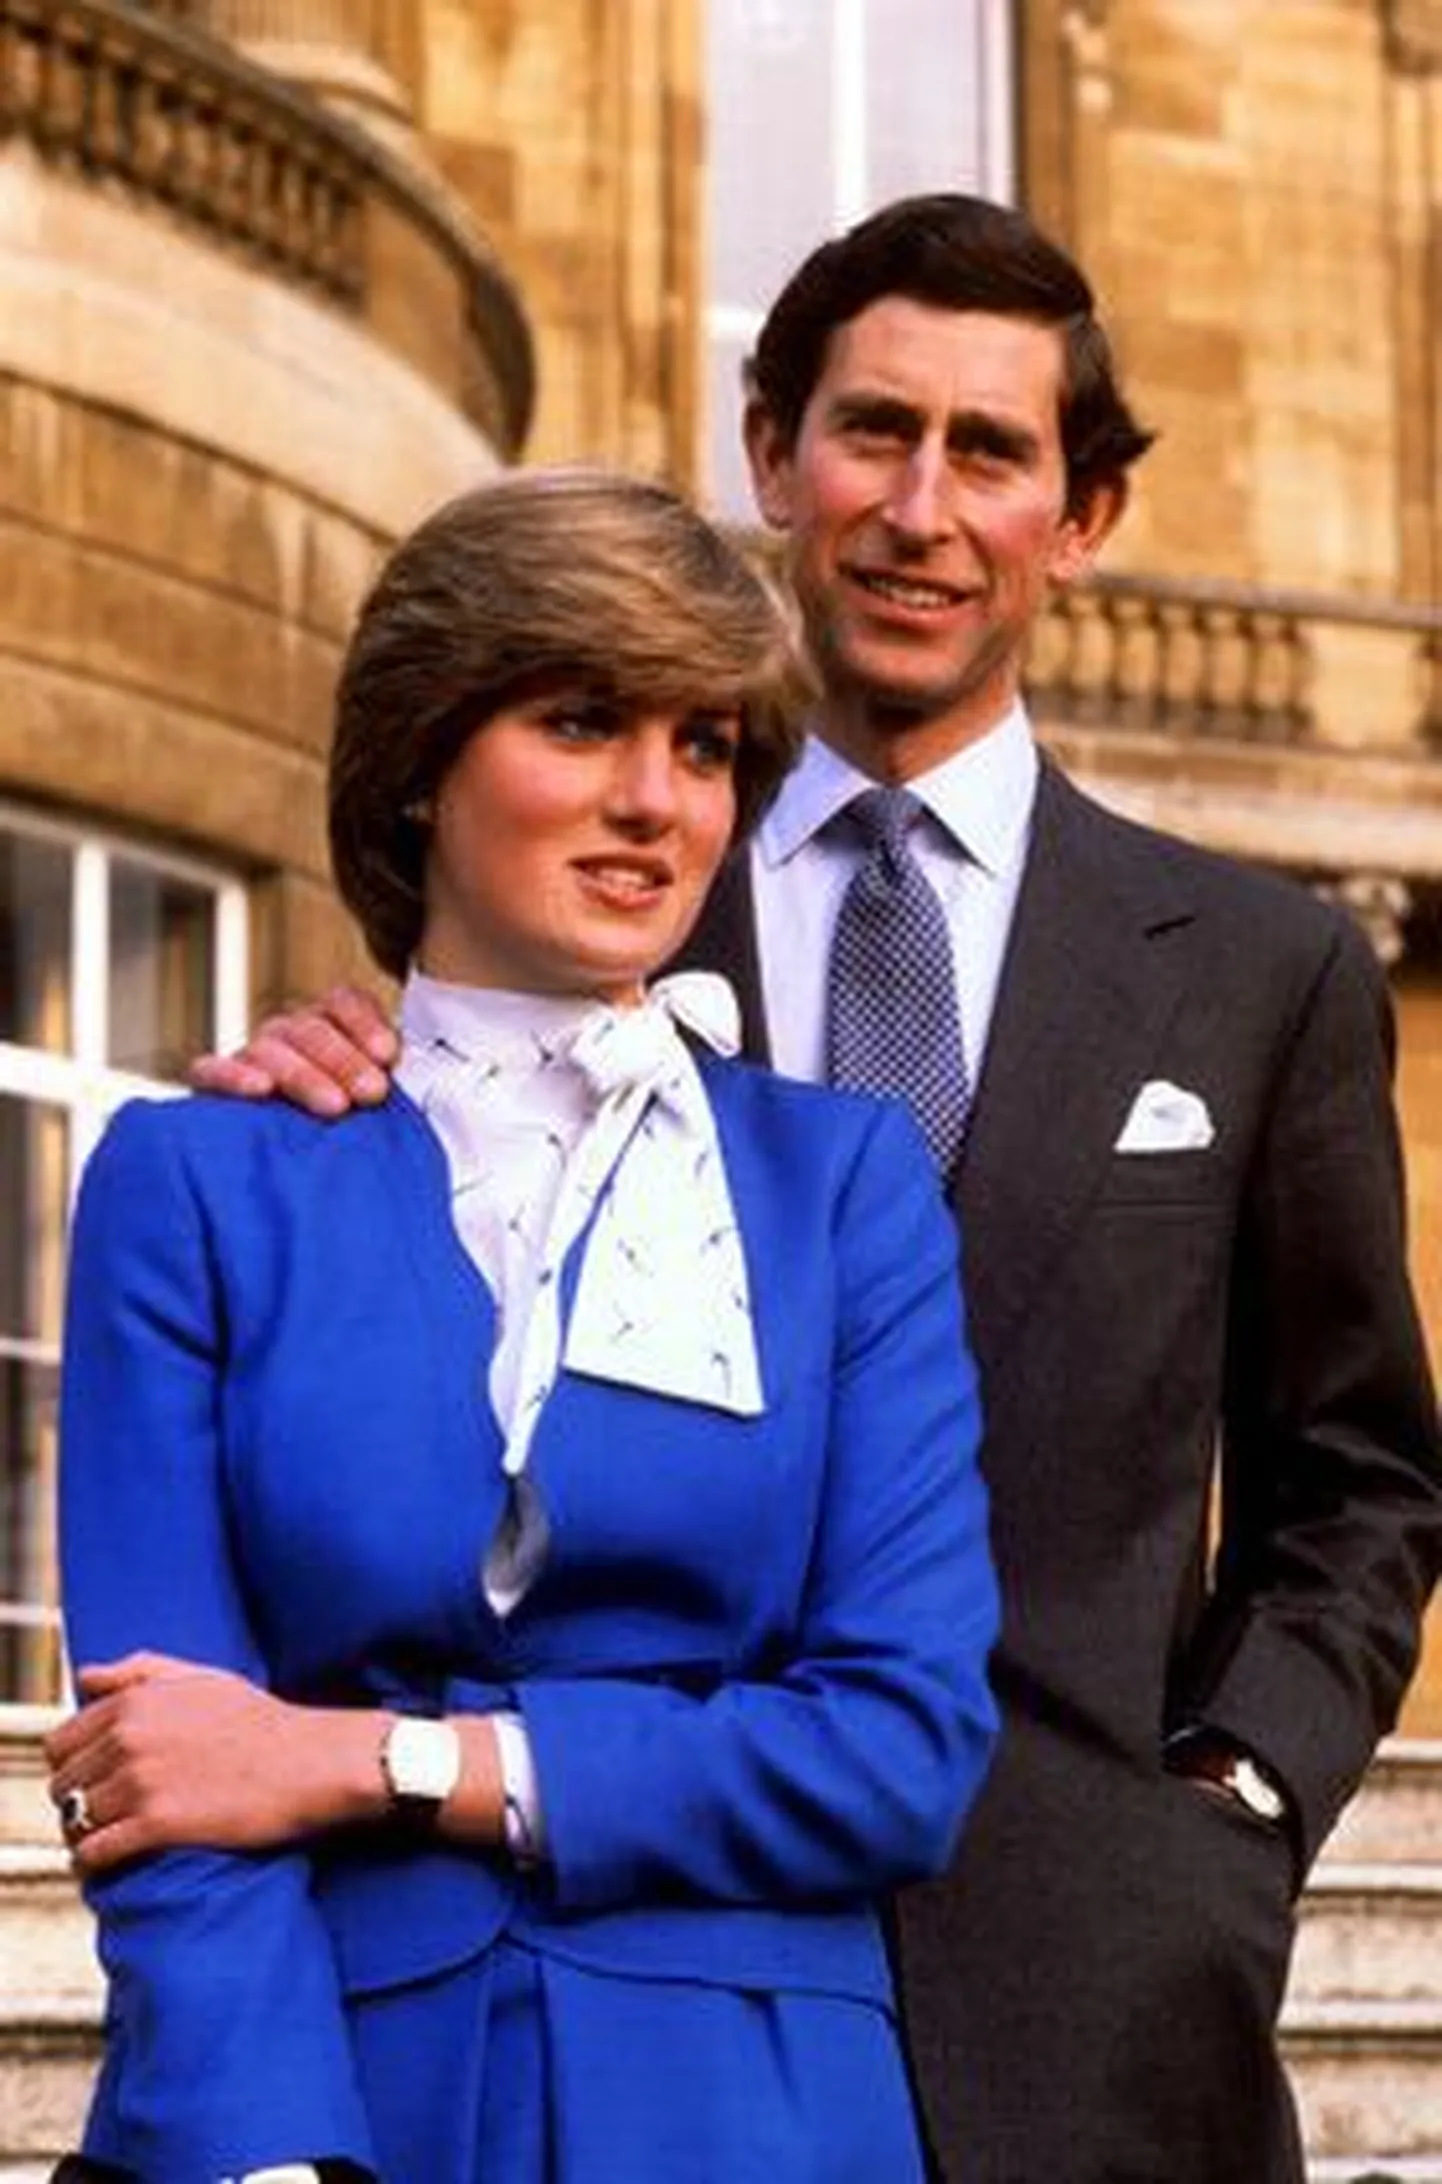 Prints Charles ja Diana 1981. aastal kihluse väljakuulutamisel